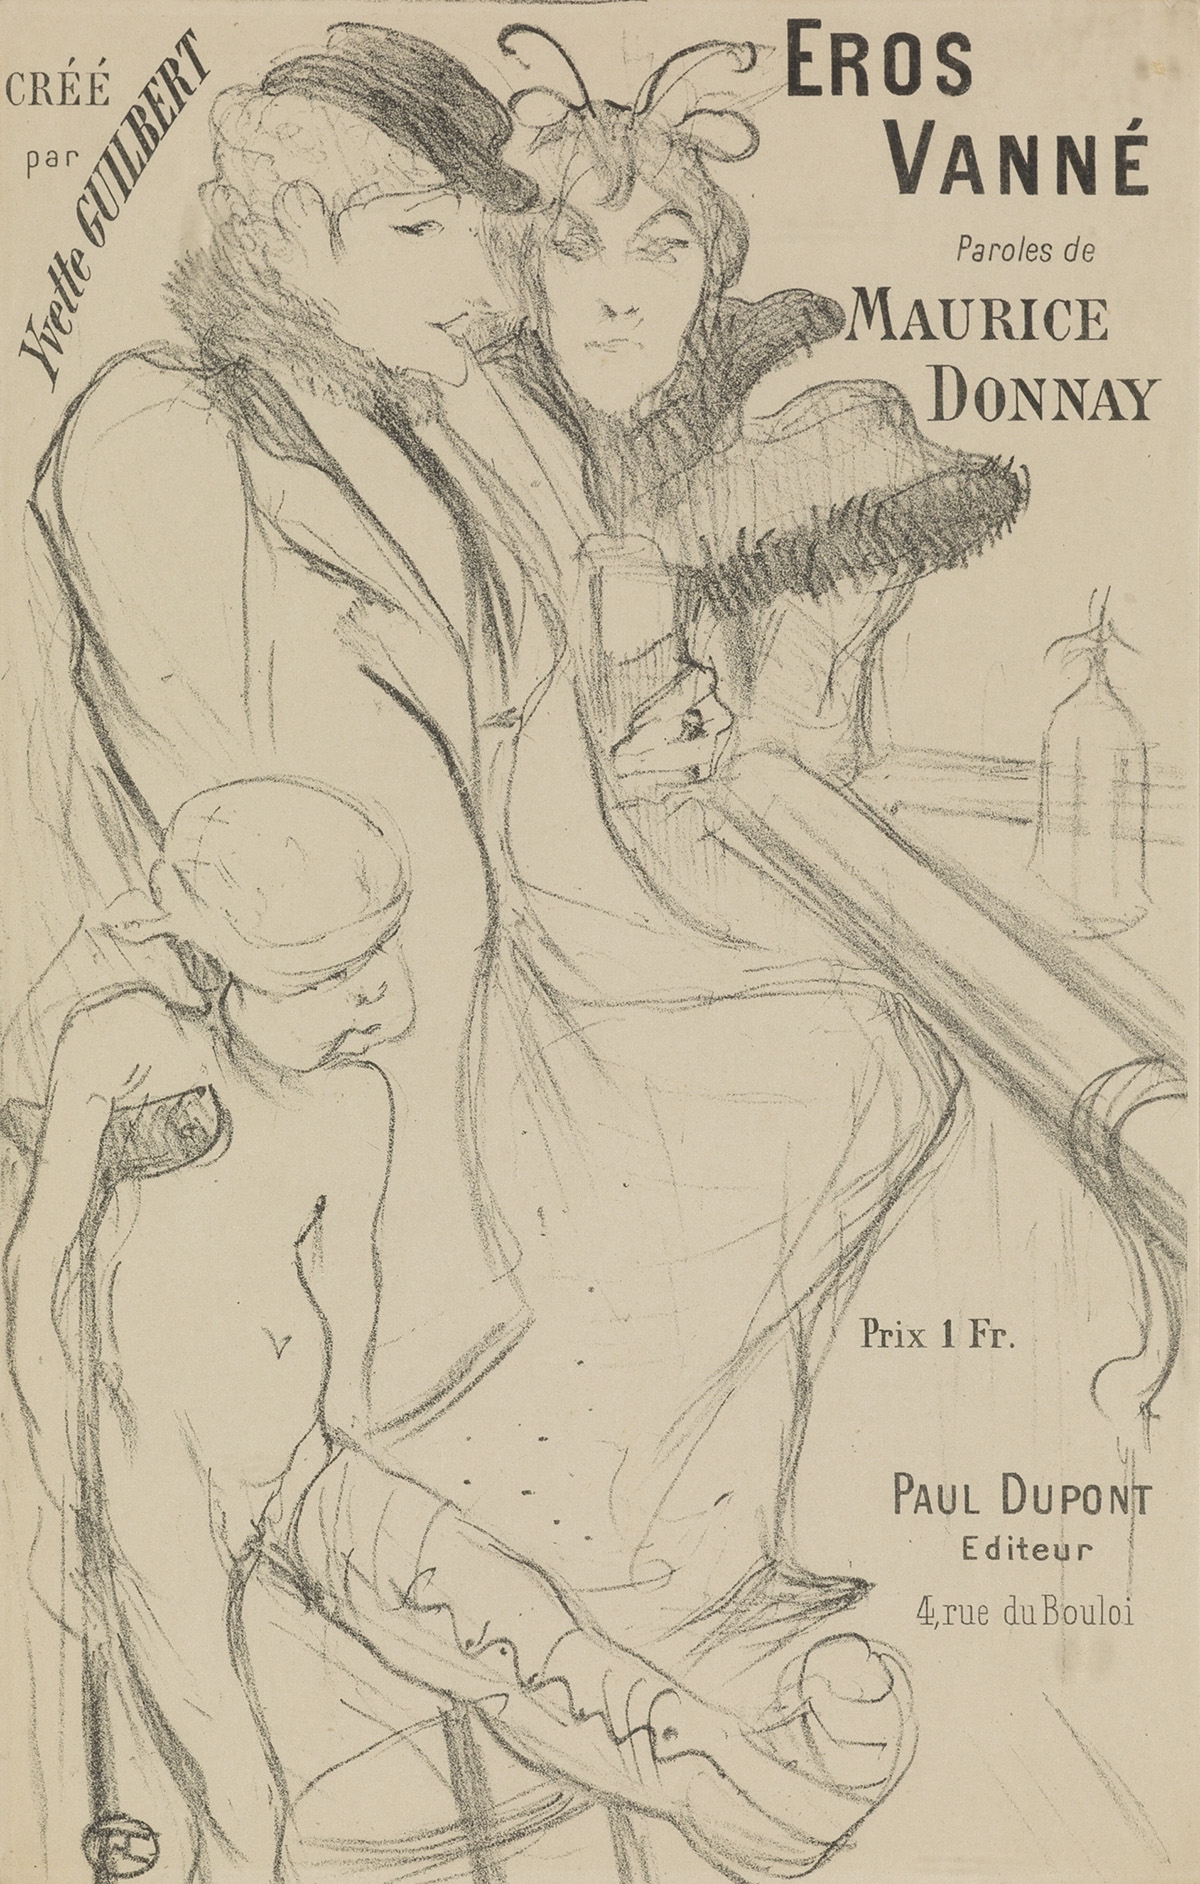 EROS VANNÉ. Sheet music by Henri de Toulouse-Lautrec, 1894